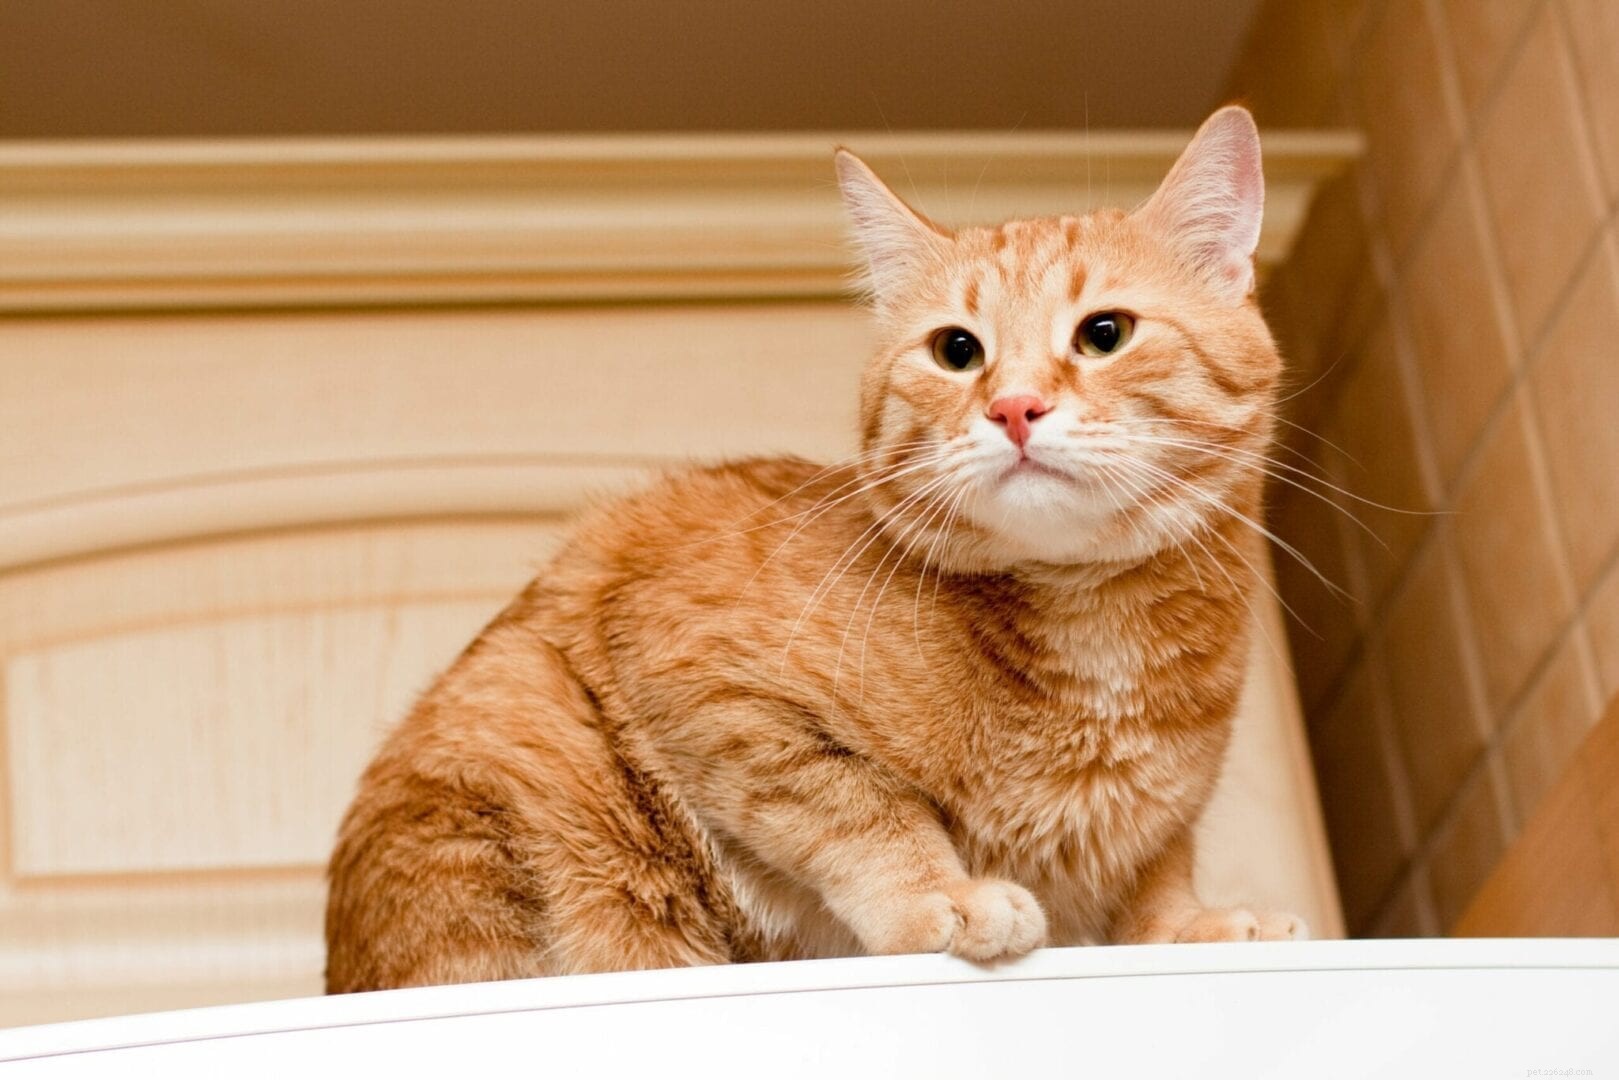 Perché ai gatti piace sedersi sopra il frigorifero?